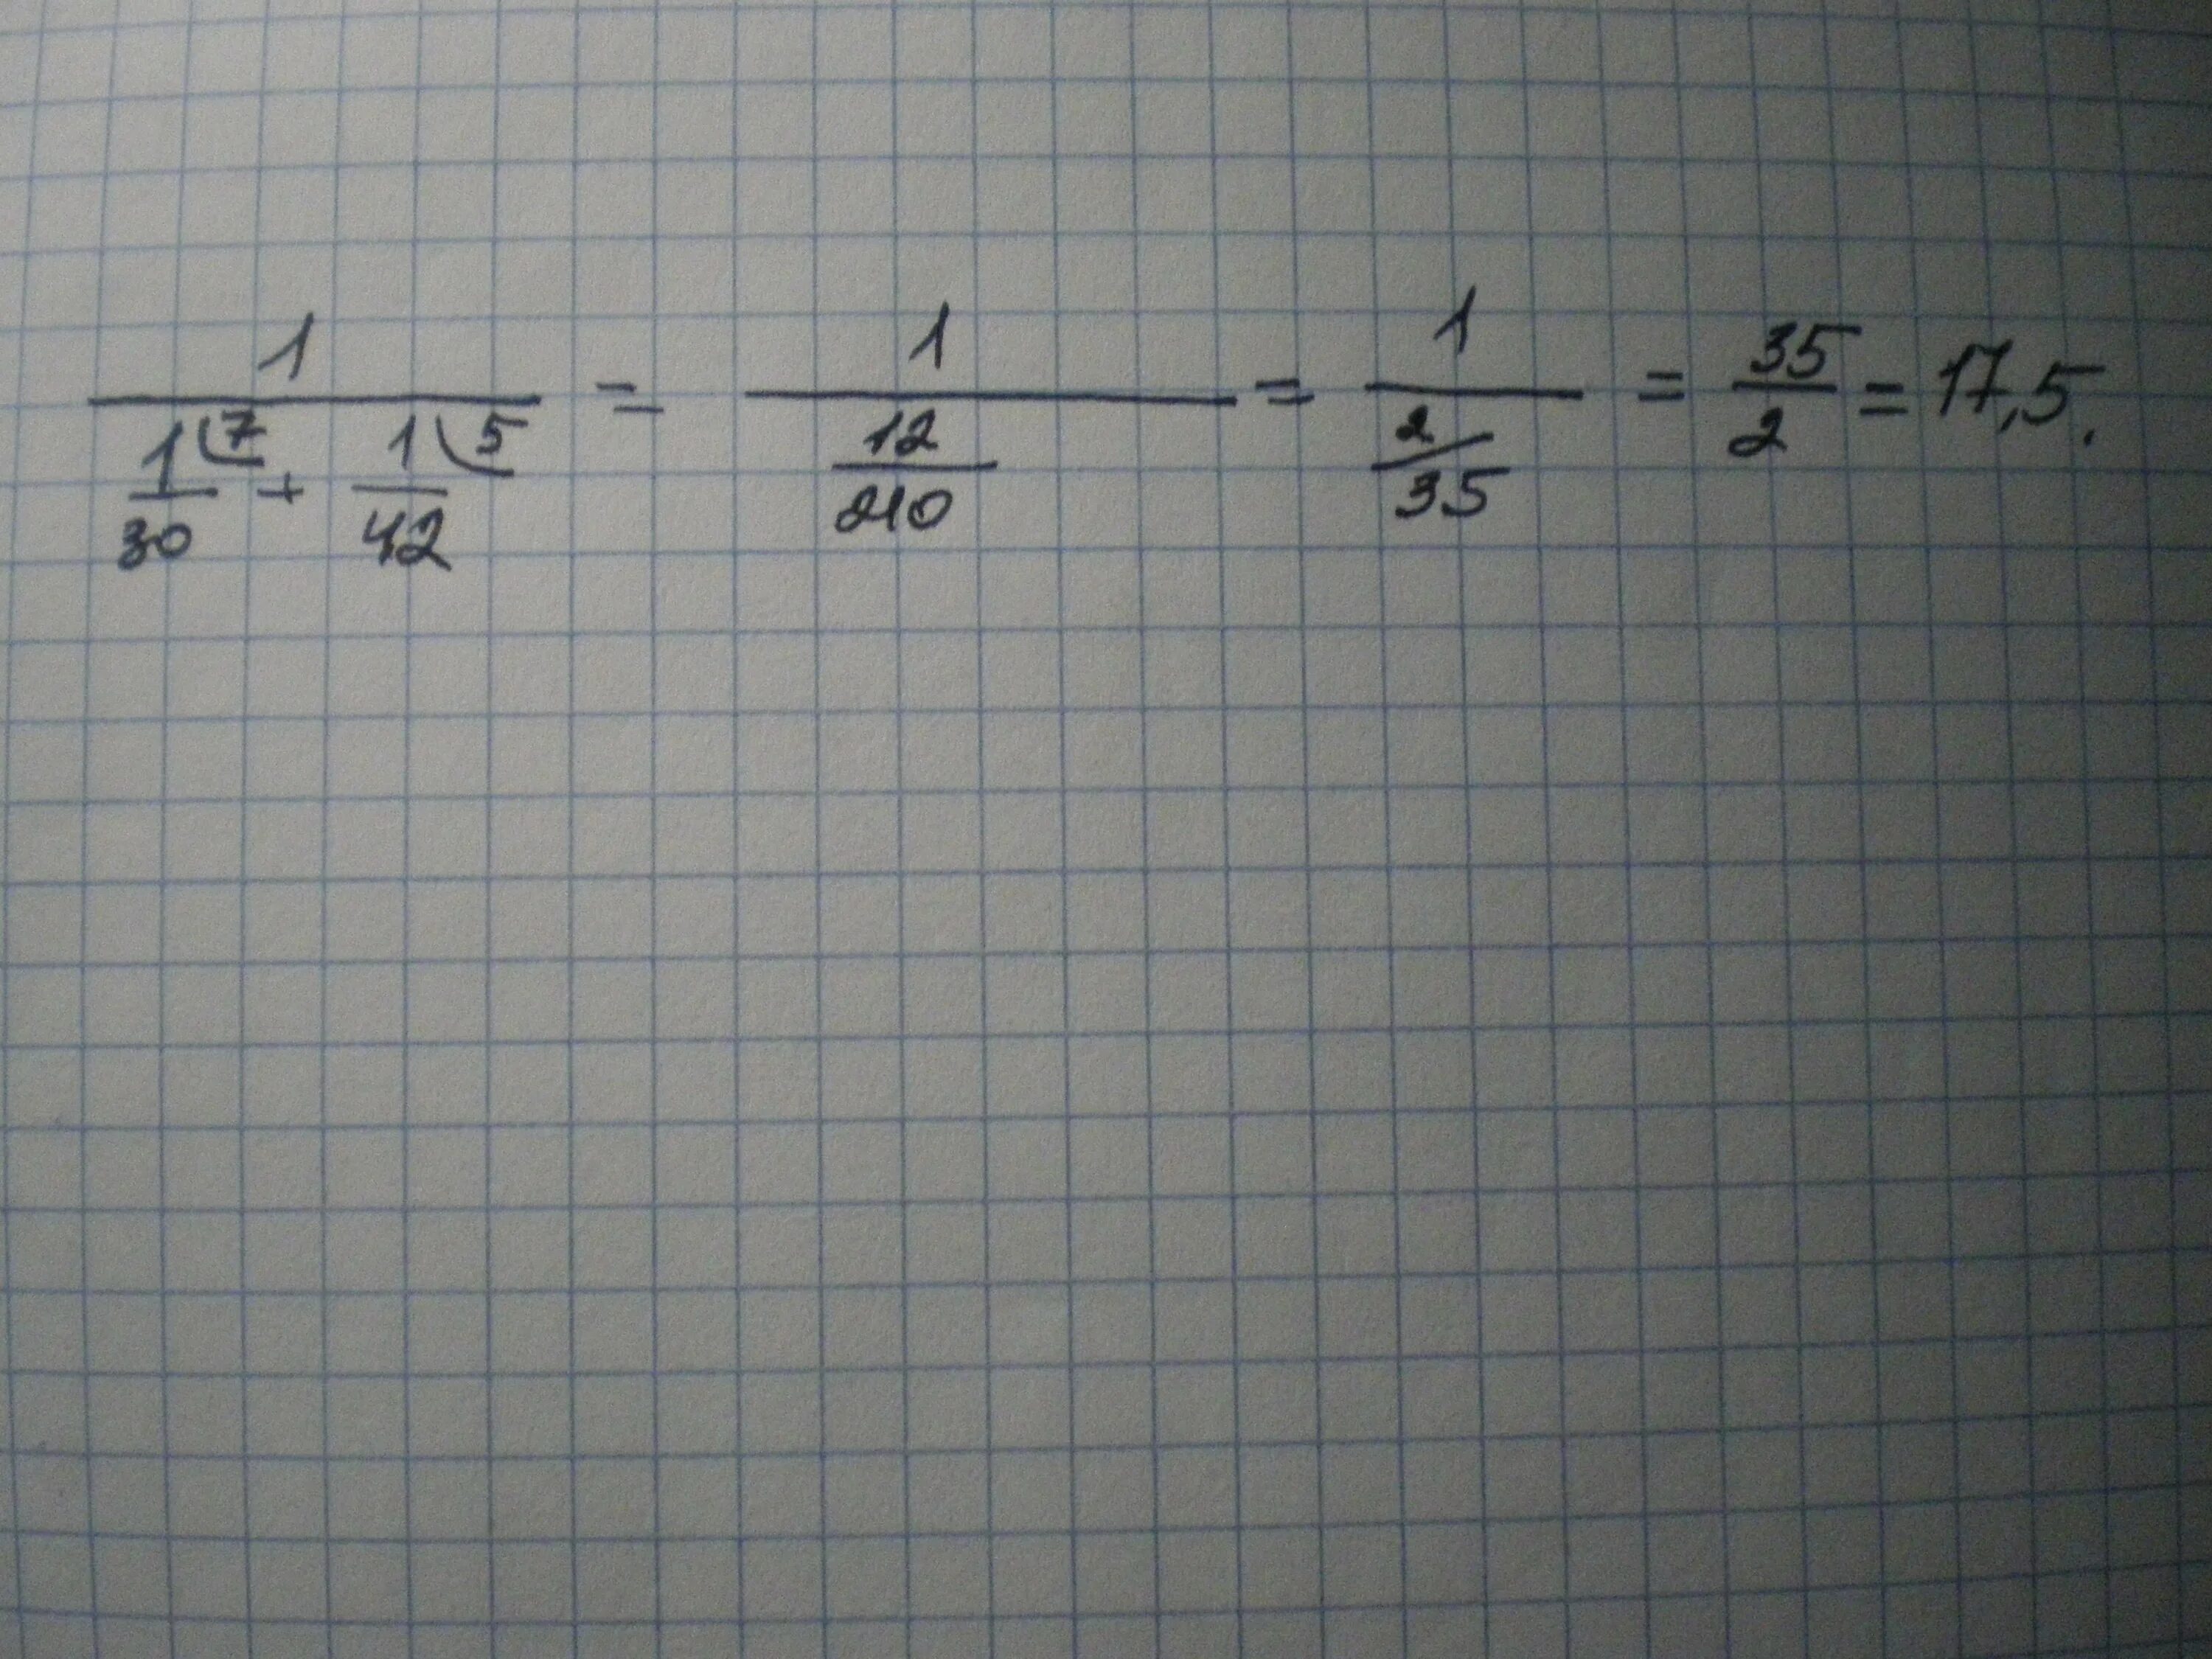 1 1 36 1 45 ответ. 1/1/30+1/42 Решение. 1 Деленное на 1/30+1/42. 1/1/30+1/42. Найдите значение выражения 1/1/30+1/42.